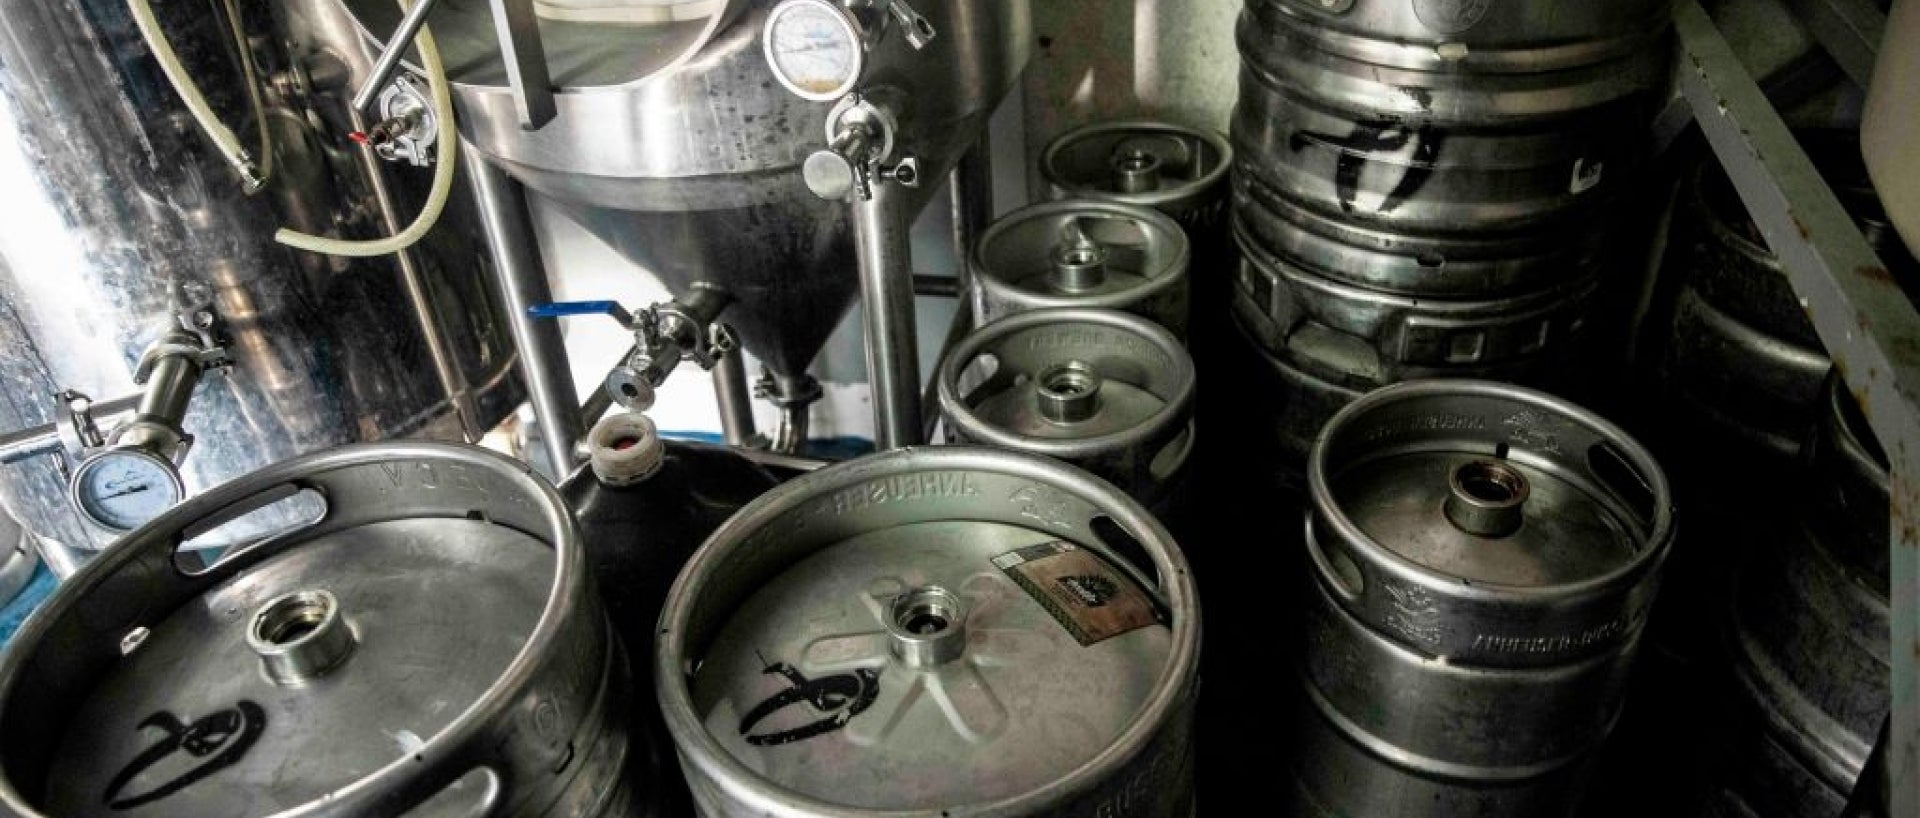 Metal beer kegs